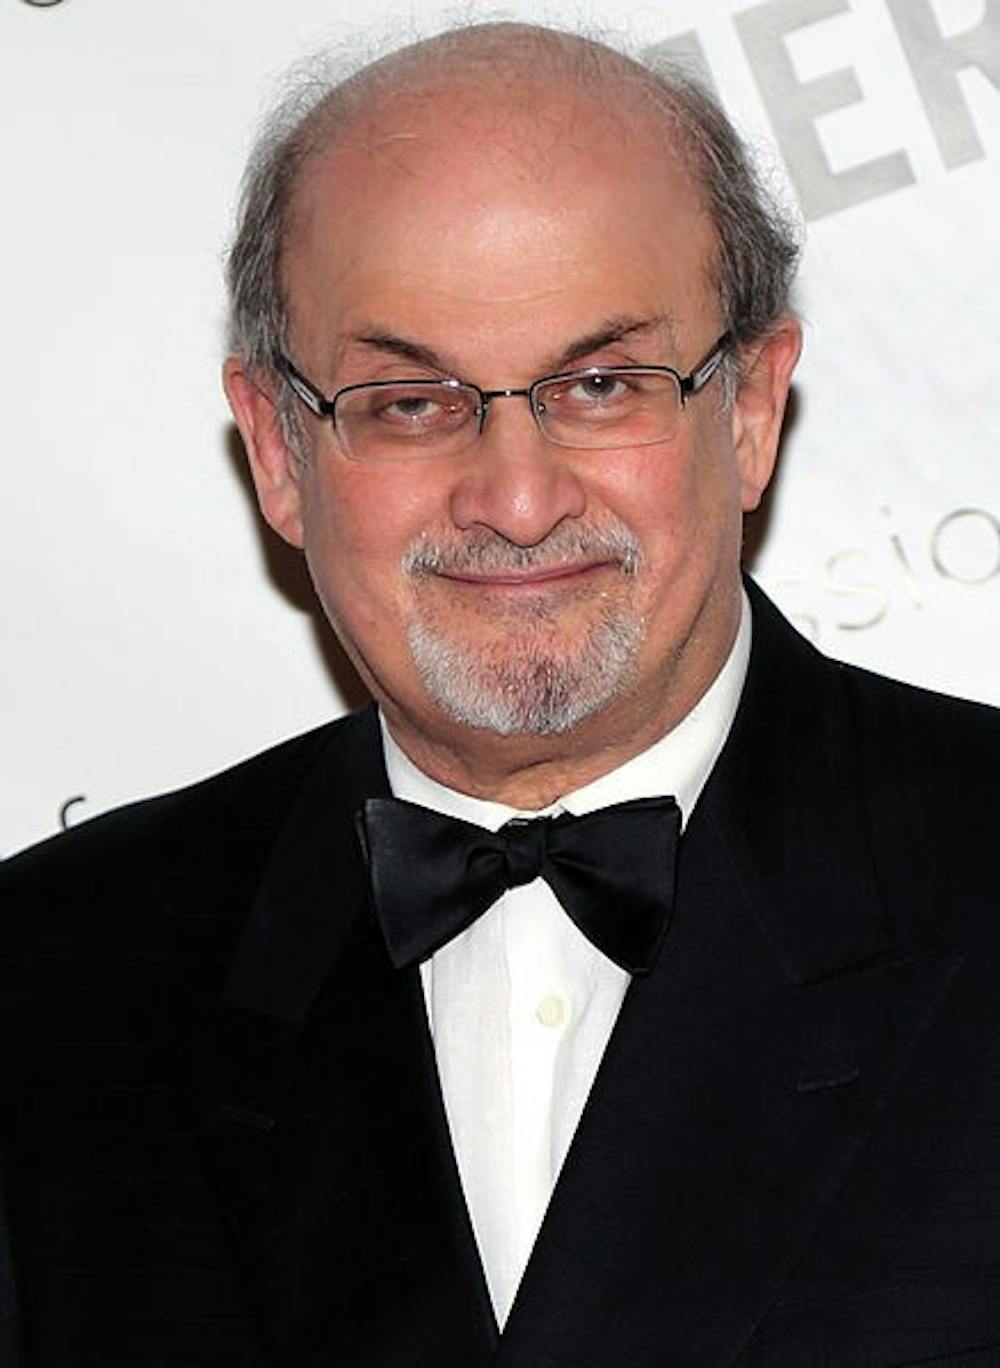 Salman Rushdie spoke enthusiastically at the Paramount Theater.